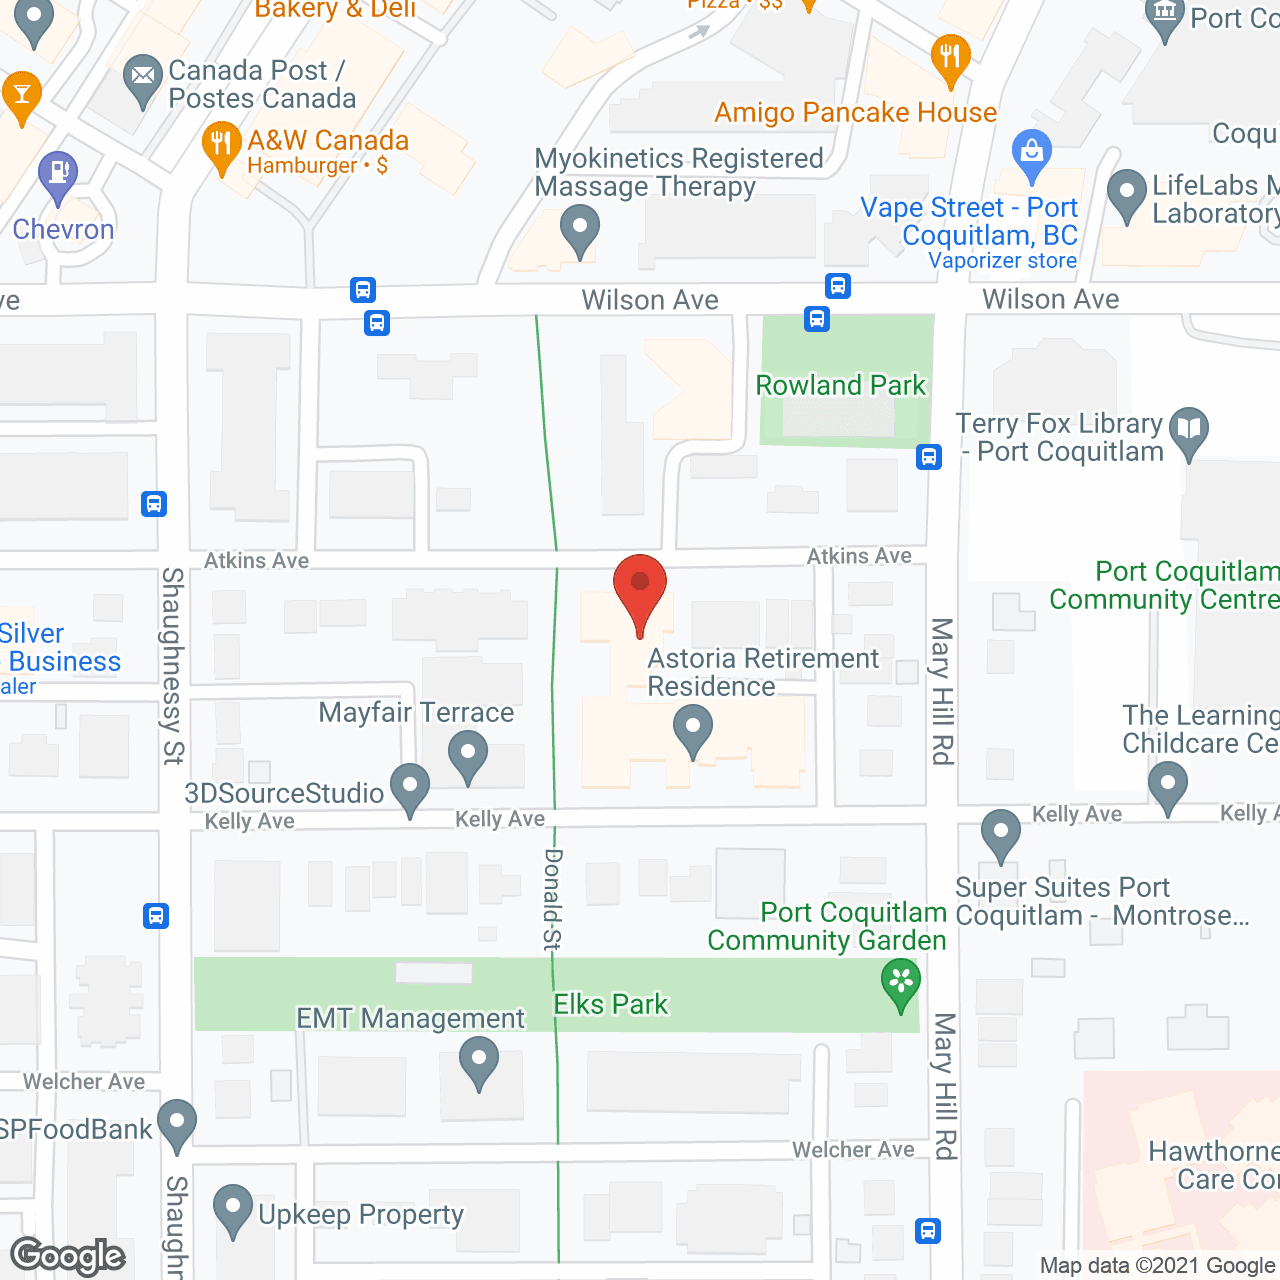 Astoria Retirement Residence in google map